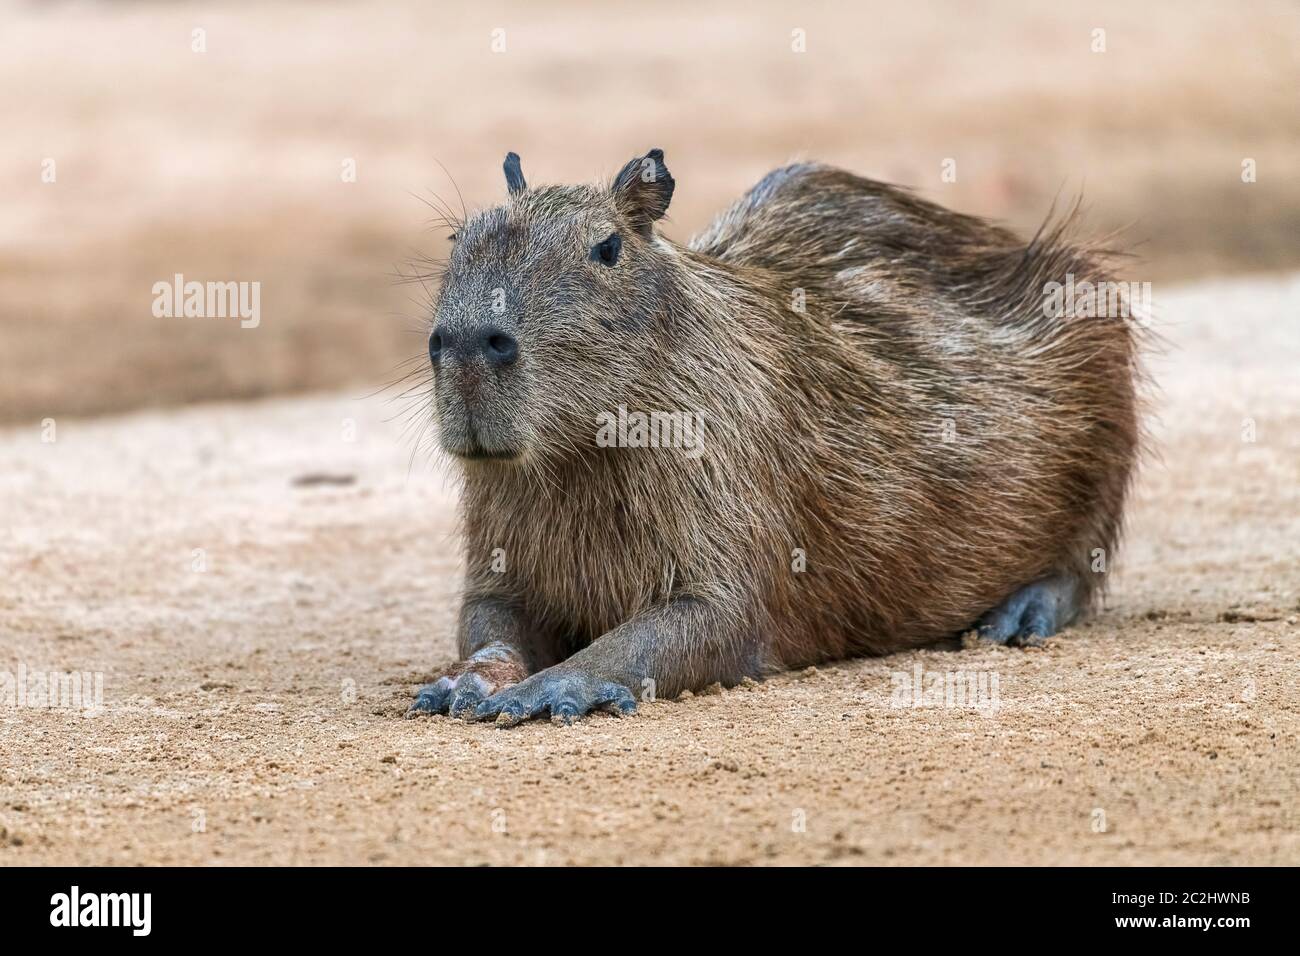 Capybara oder Wasserschwein (Hydrochoerus hydrochaeris) ruht auf sandbank, Pantanal, Mato Grosso, Brasilien Foto Stock